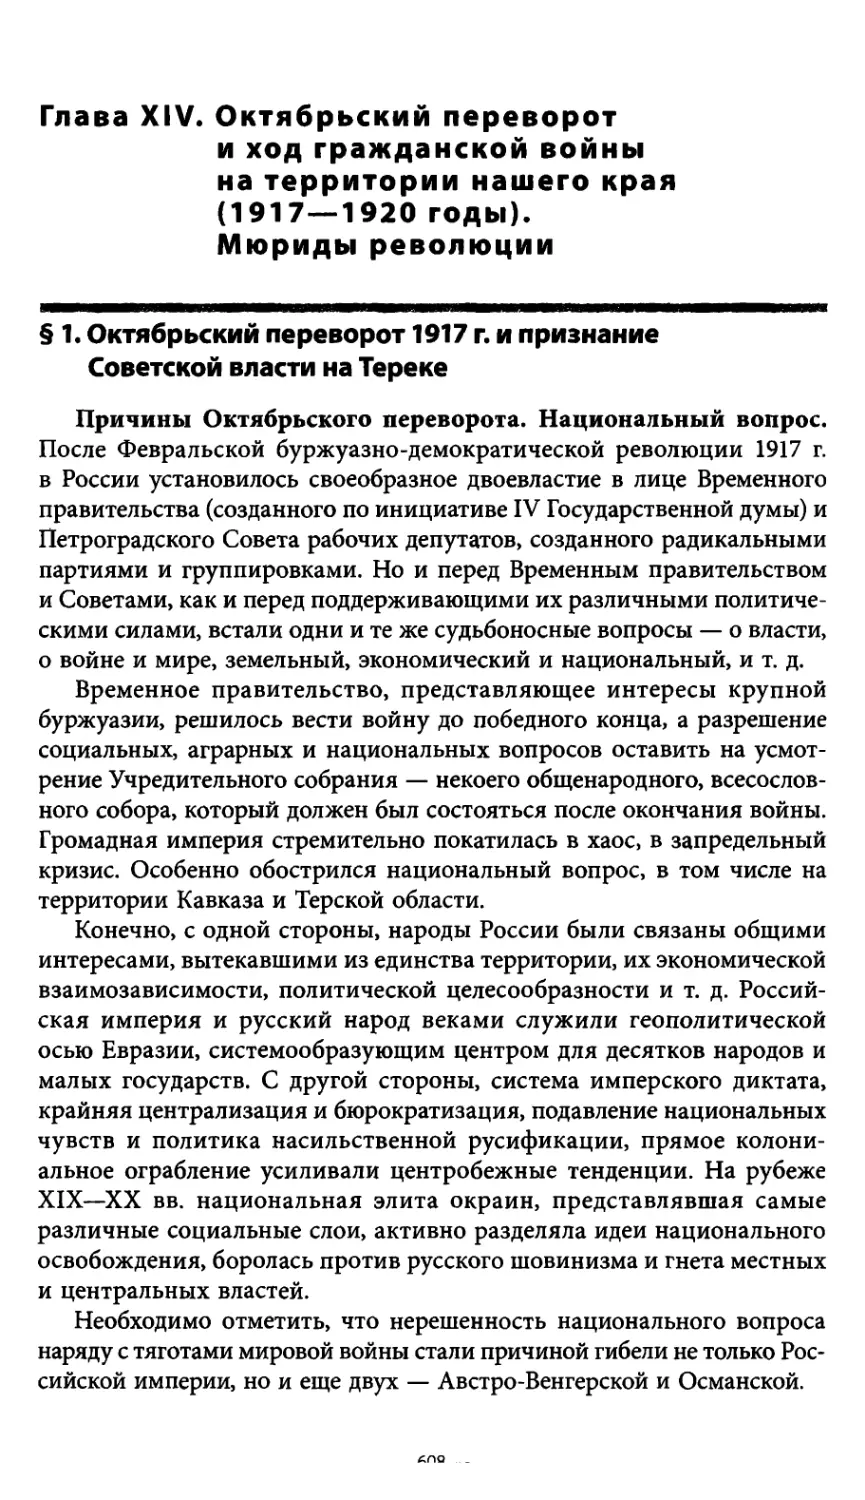 § 1. Октябрьский переворот 1917 г. и признание Советской власти на Тереке